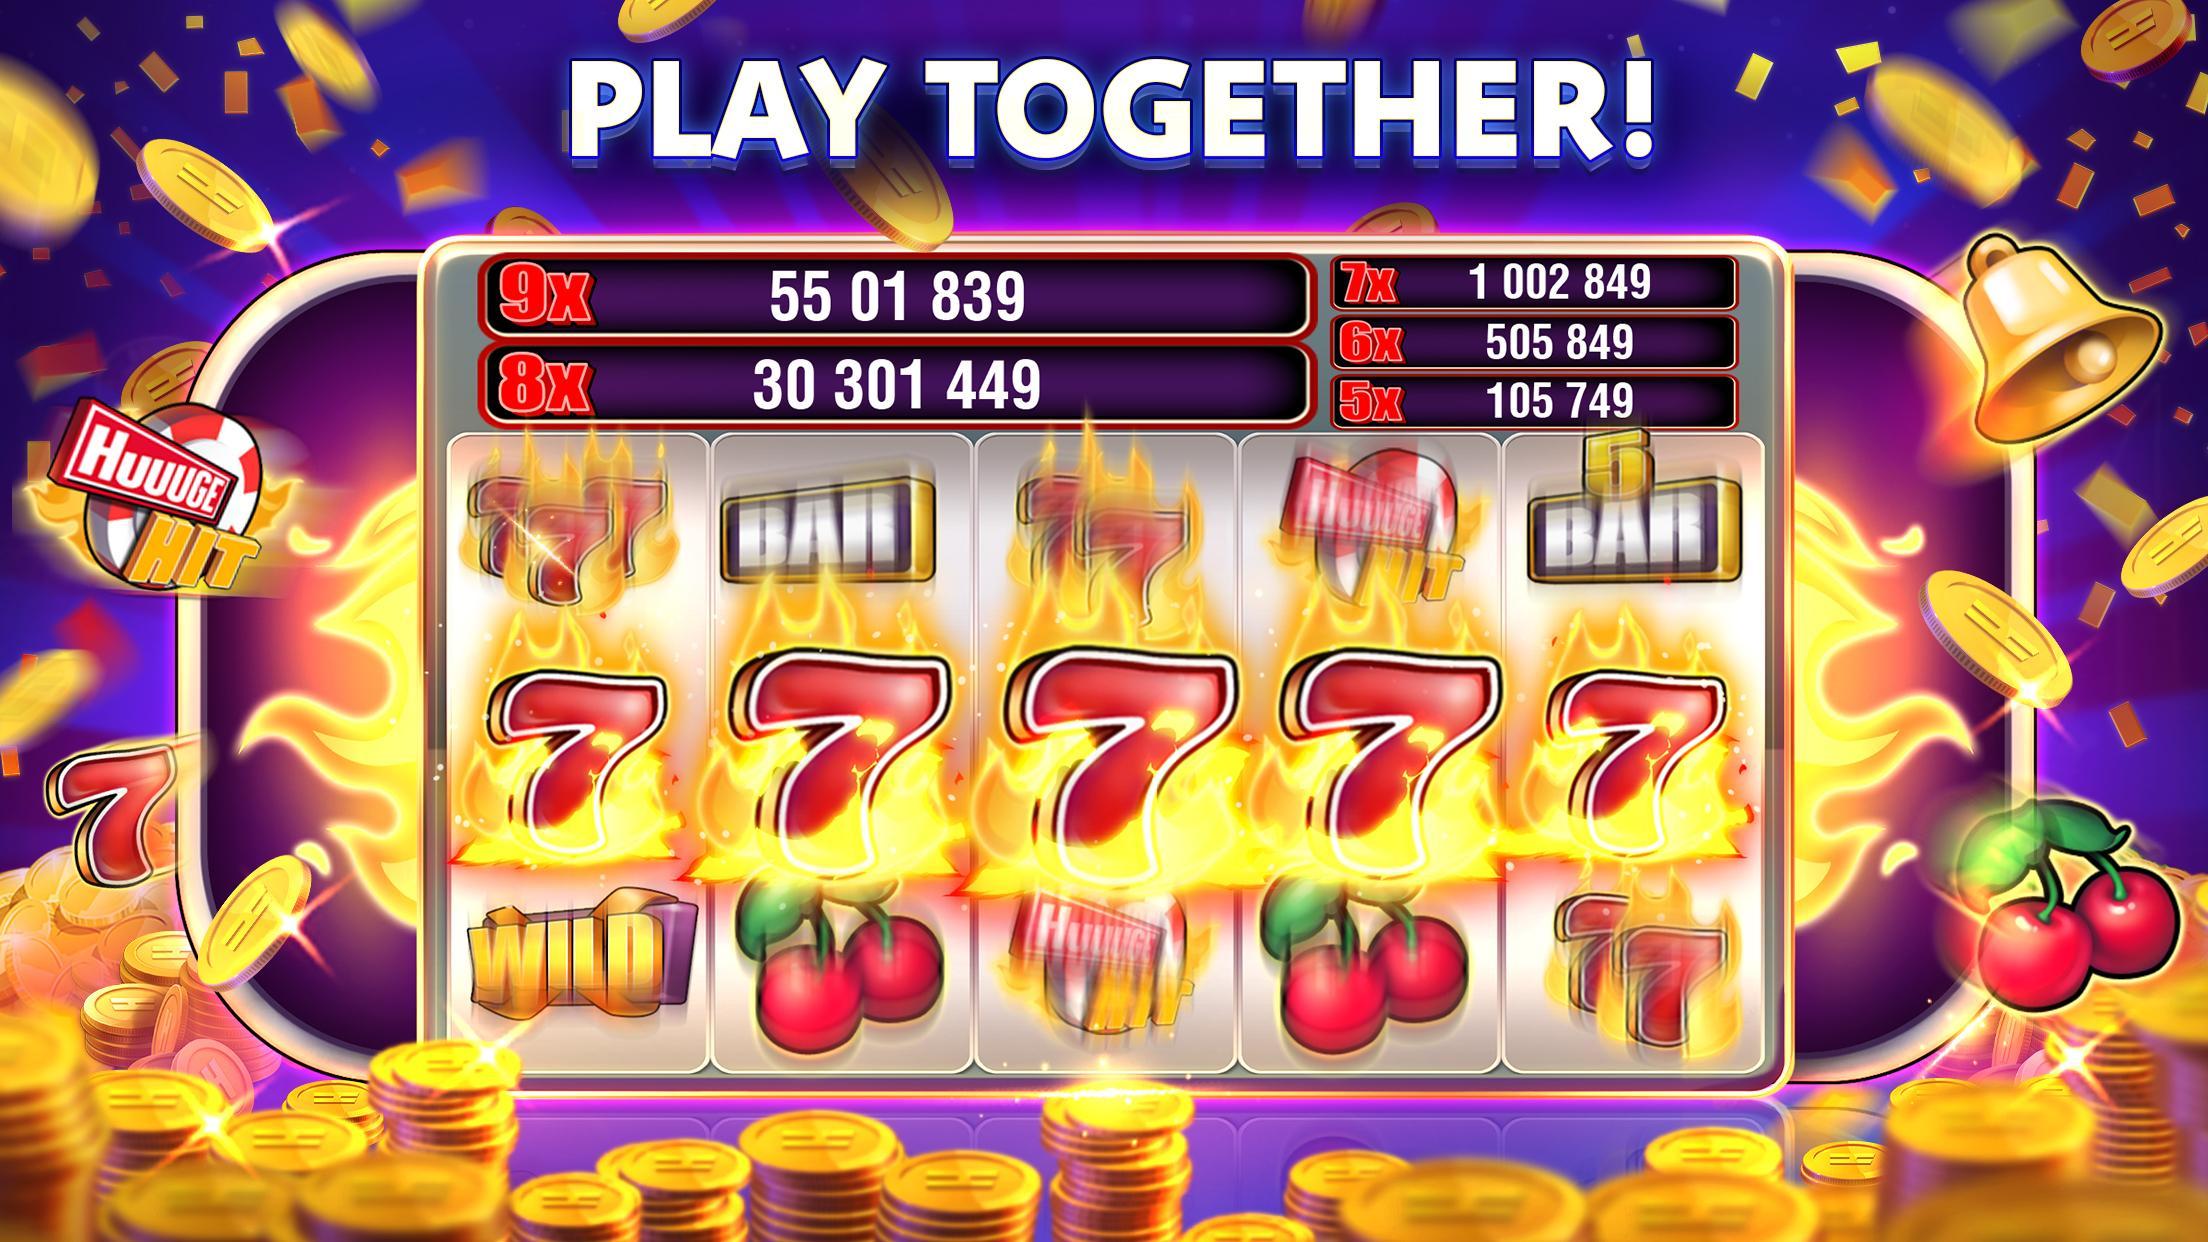 Stars Slots Casino - Vegas Slot Machines 1.0.1366 Screenshot 1